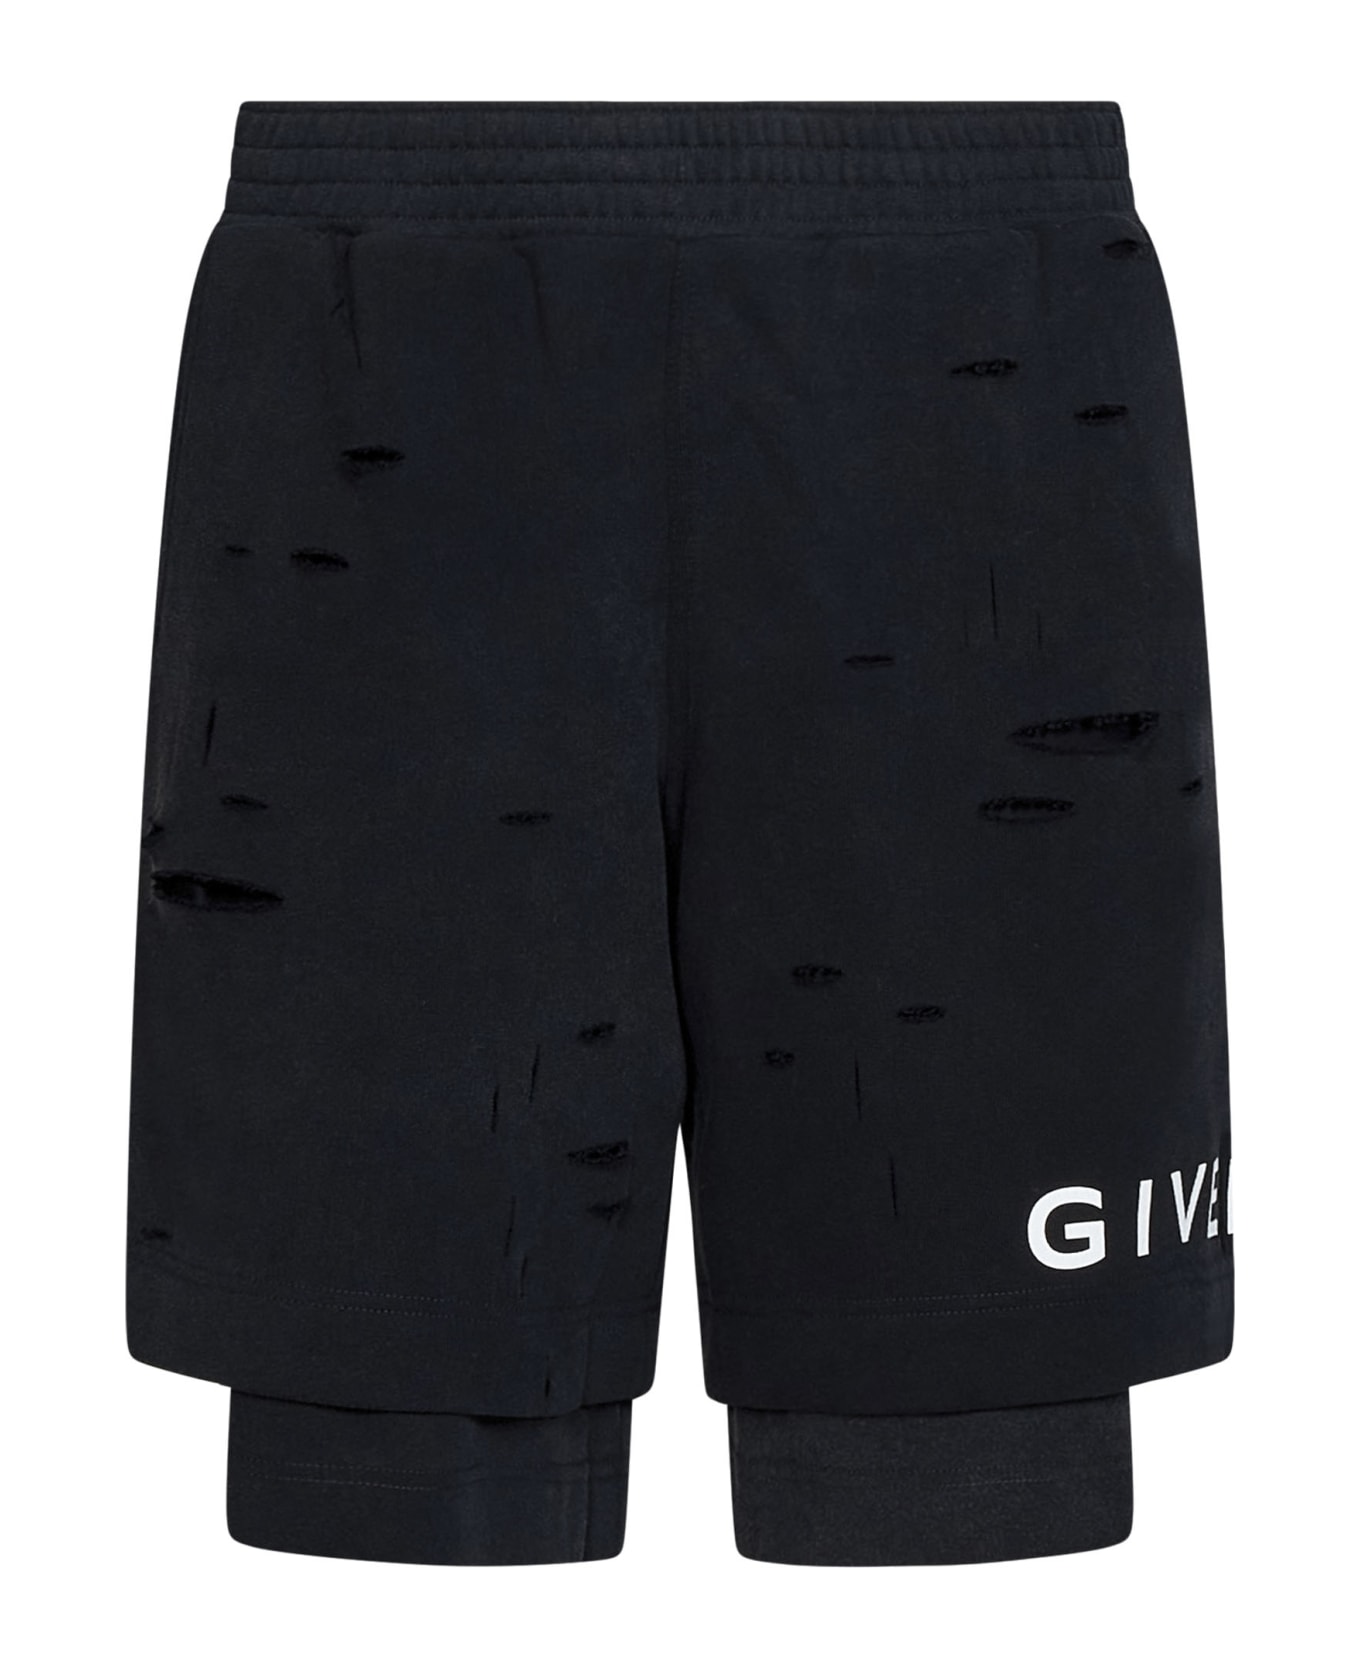 Givenchy Archetype Shorts - Black ショートパンツ